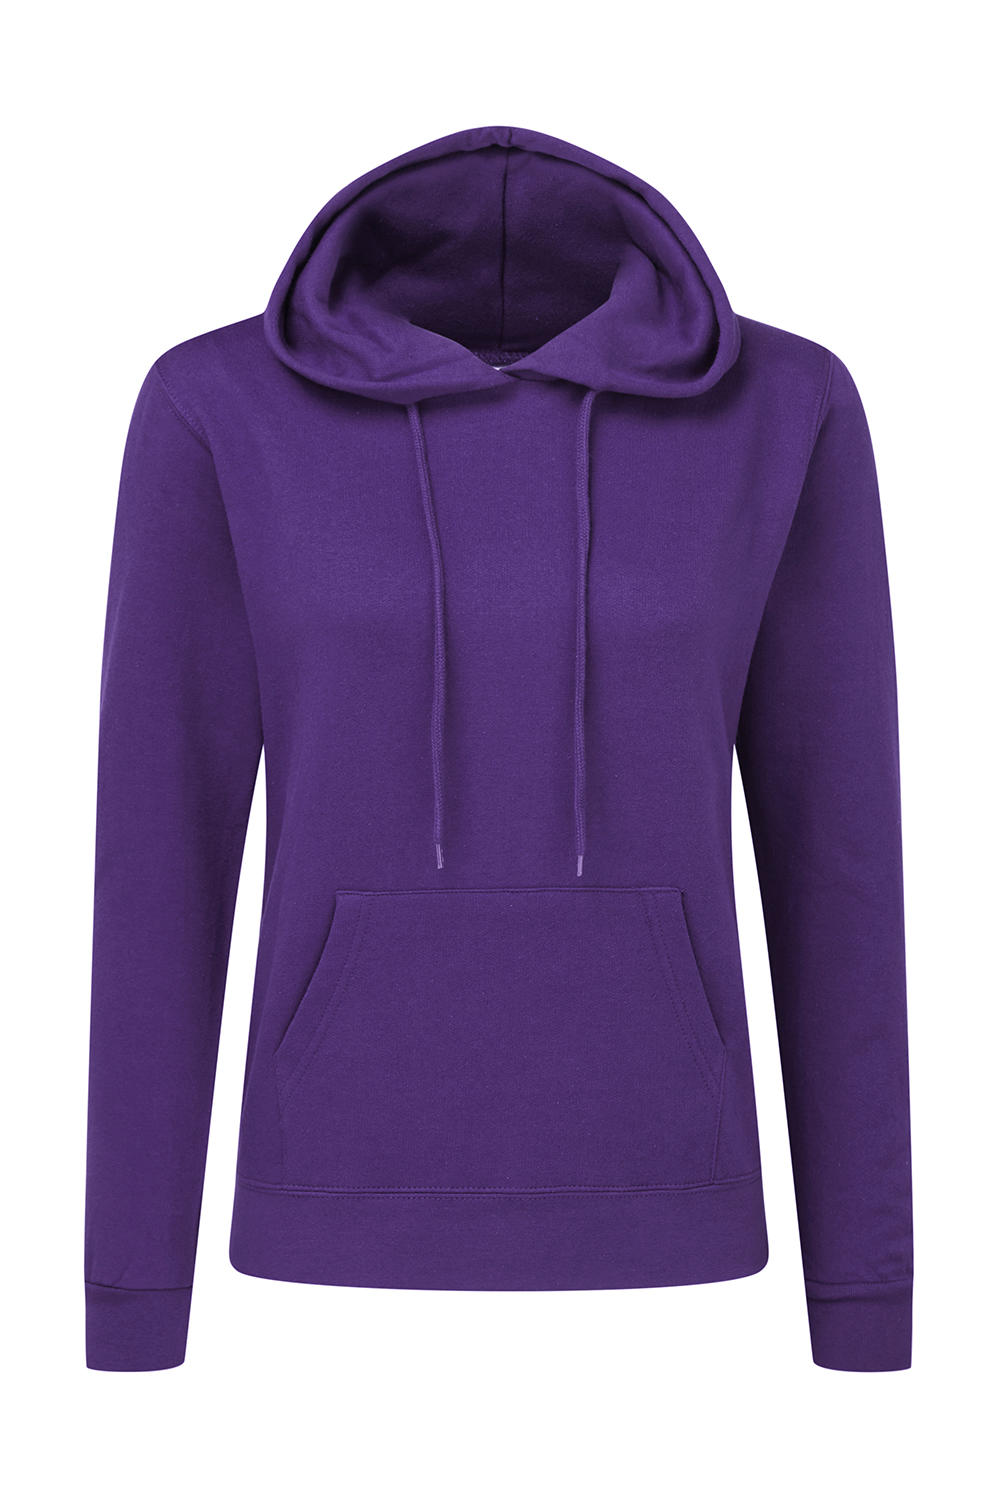  Ladies Hooded Sweatshirt in Farbe Purple